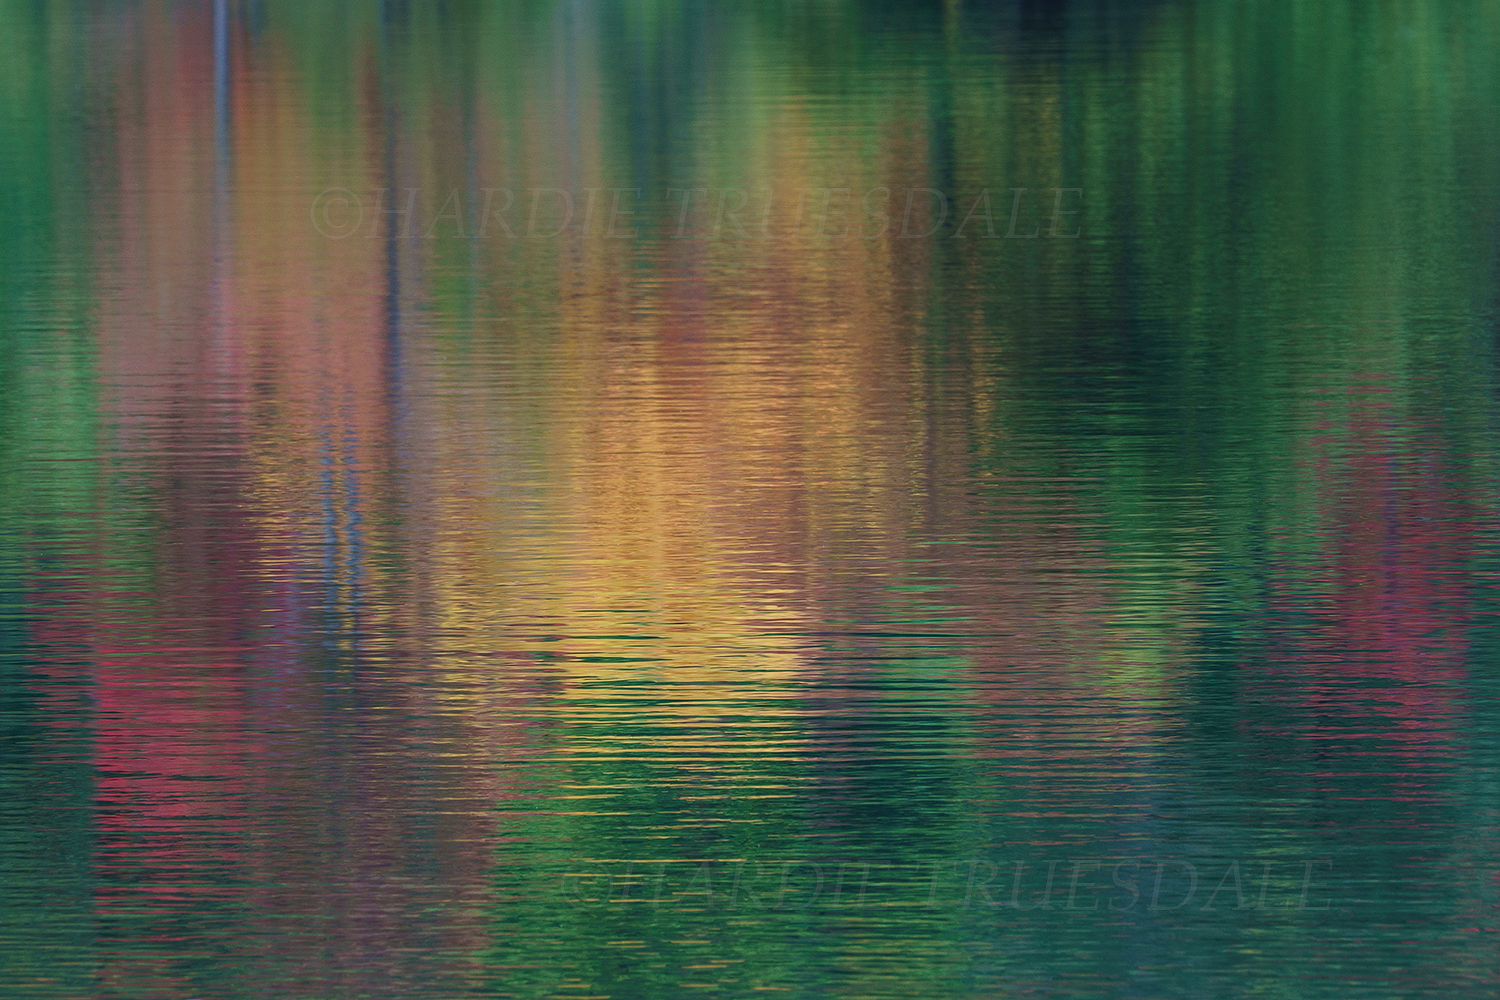 Cos#308 "Monet's Fall, North Lake"